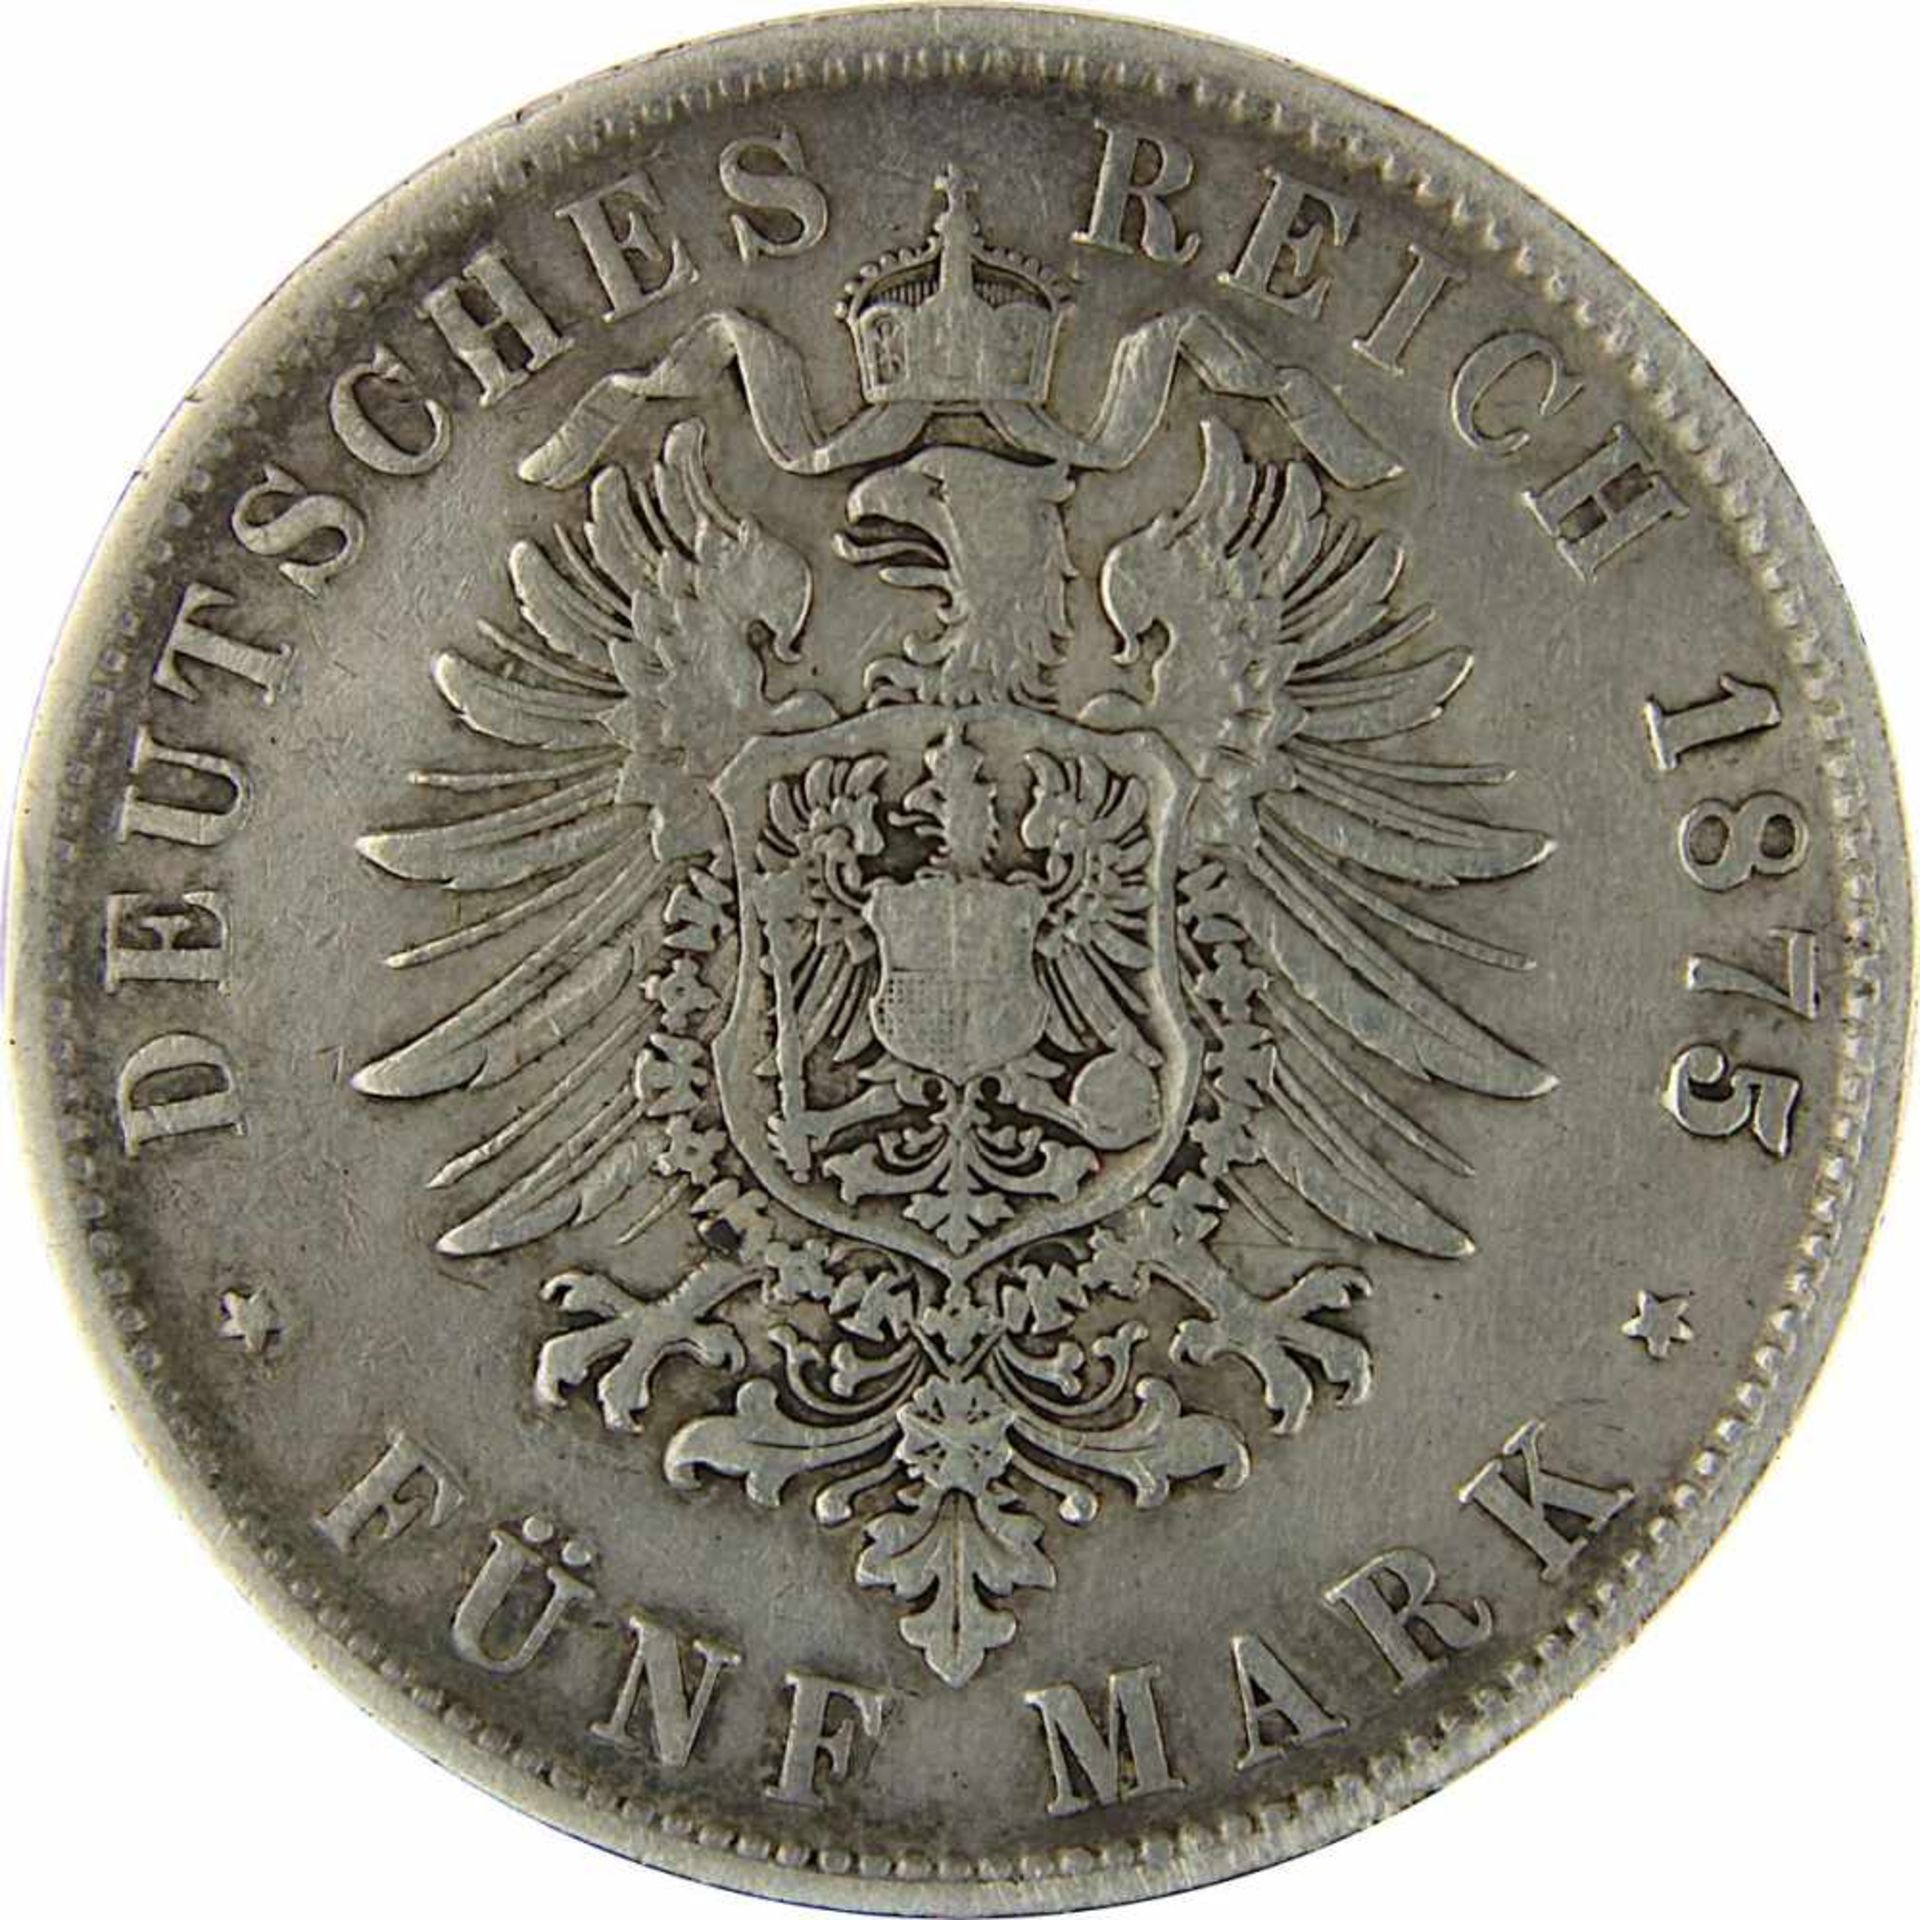 5 Mark 1875 F König Karl von Württemberg, Silber, sehr schöner Zustand, D 3,8 cm, Gewicht 27,43 g. - Bild 3 aus 3